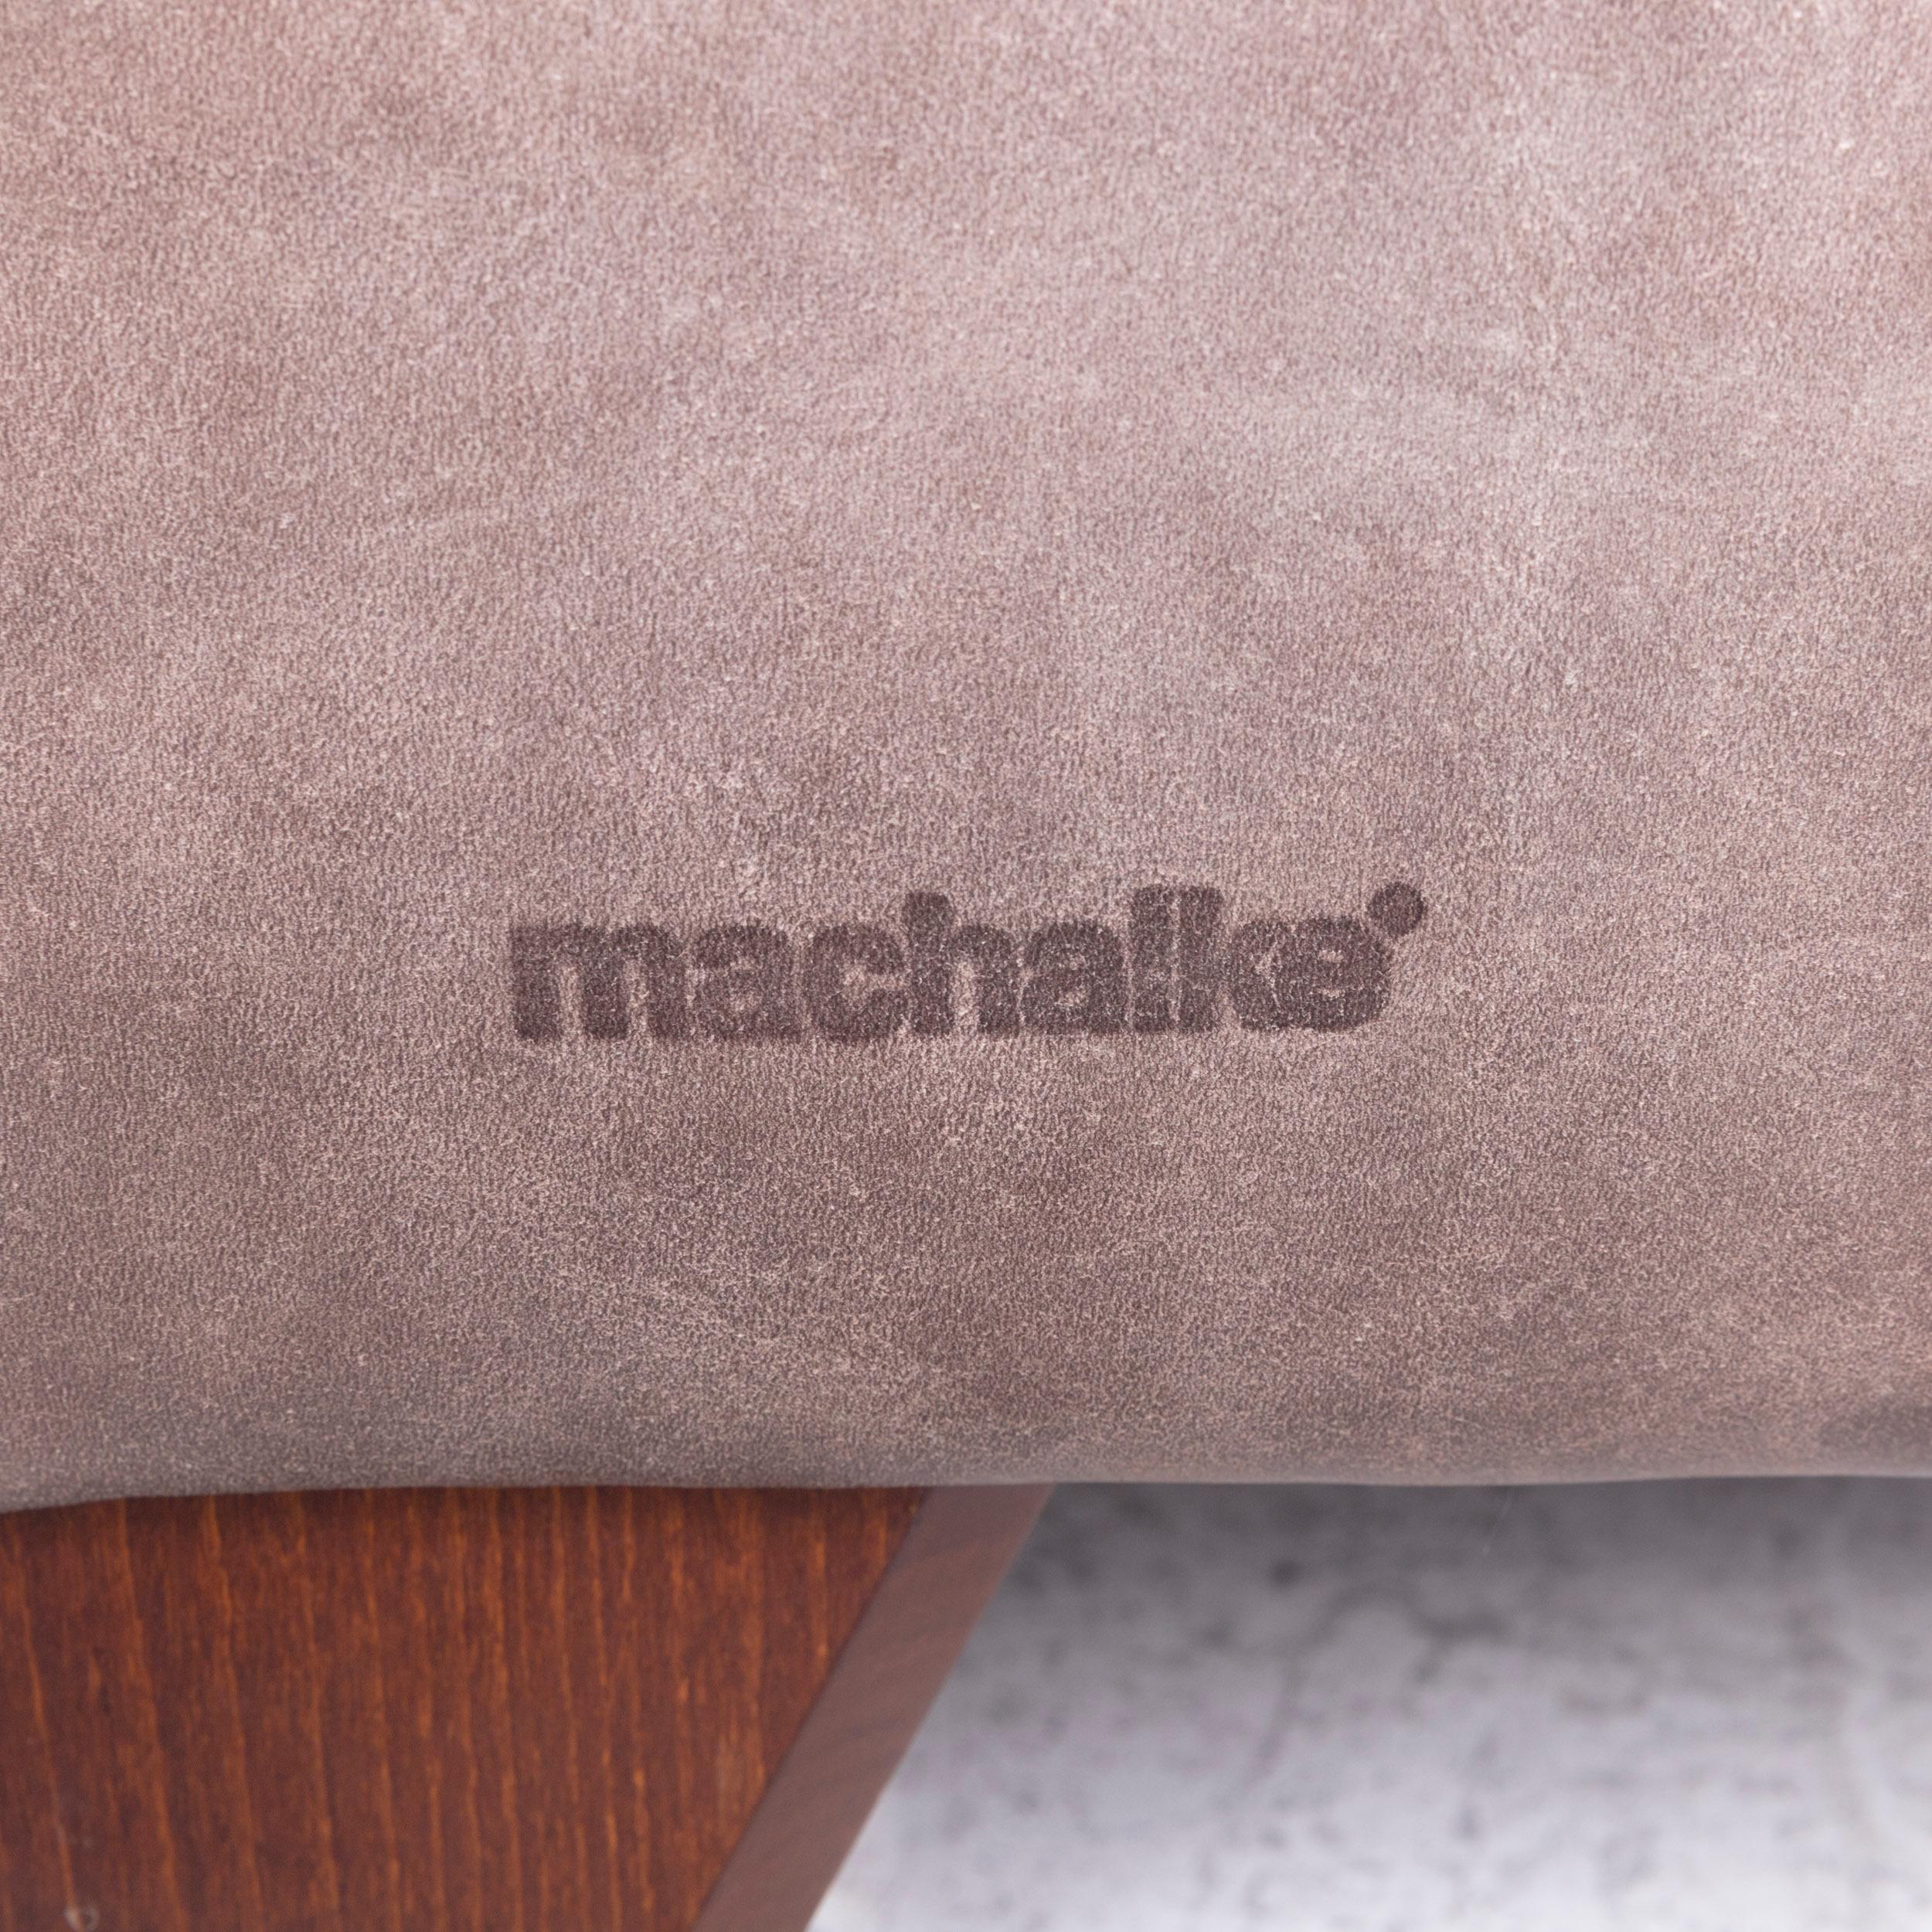 Machalke Diego Designer Leather Armchair Brown by Teun Van Zanten Genuine For Sale 2